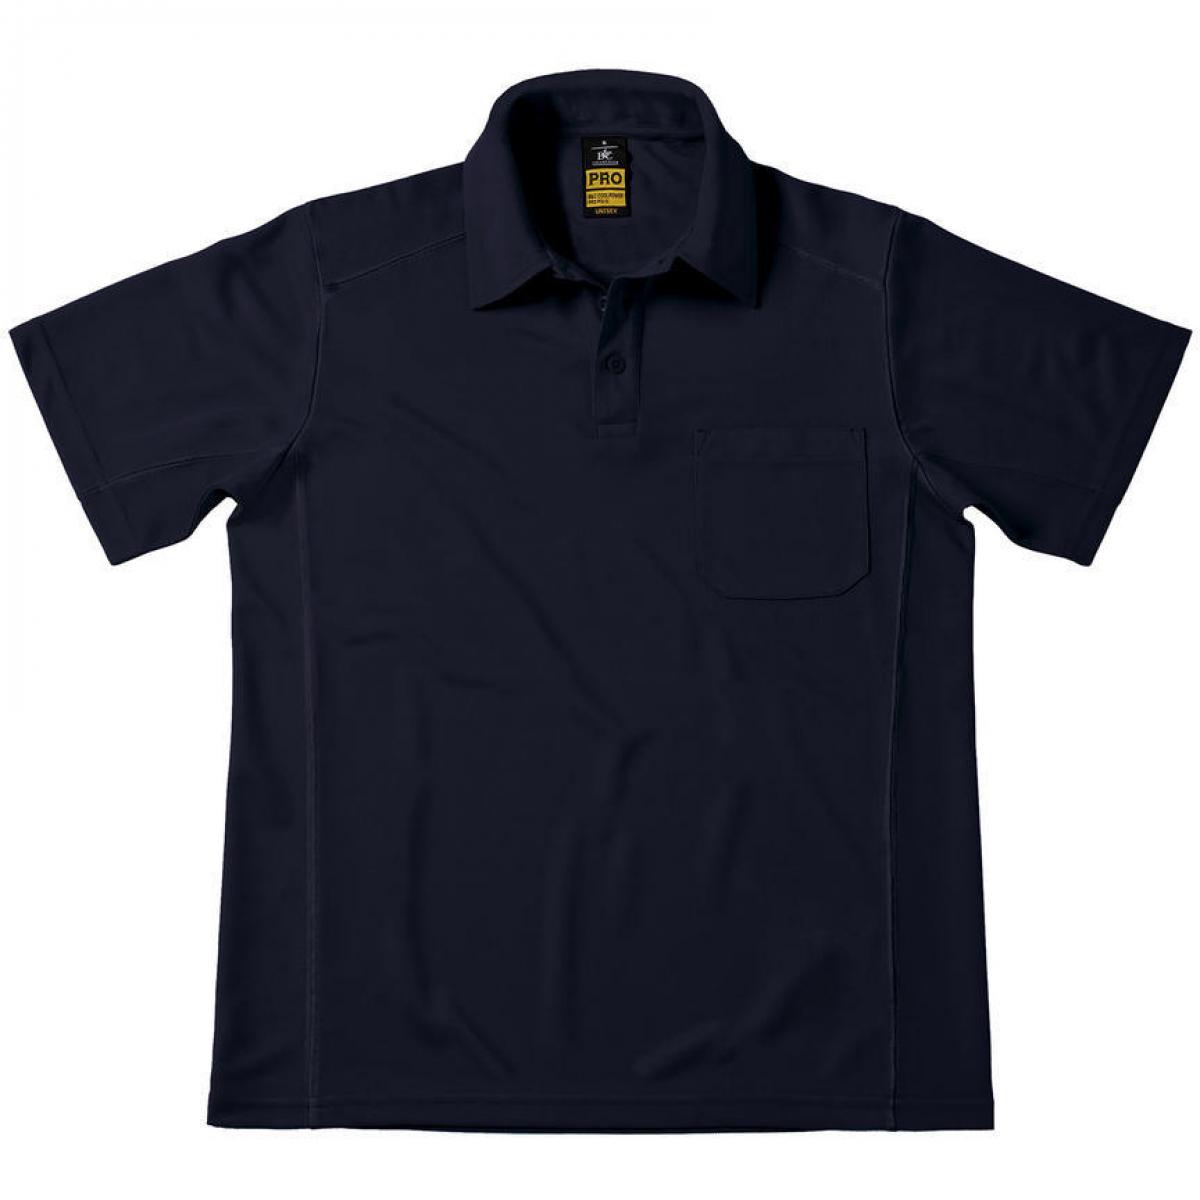 Hersteller: B&C Pro Collection Herstellernummer: PUC12 Artikelbezeichnung: Coolpower Pocket Workwear Poloshirt Herren Farbe: Navy